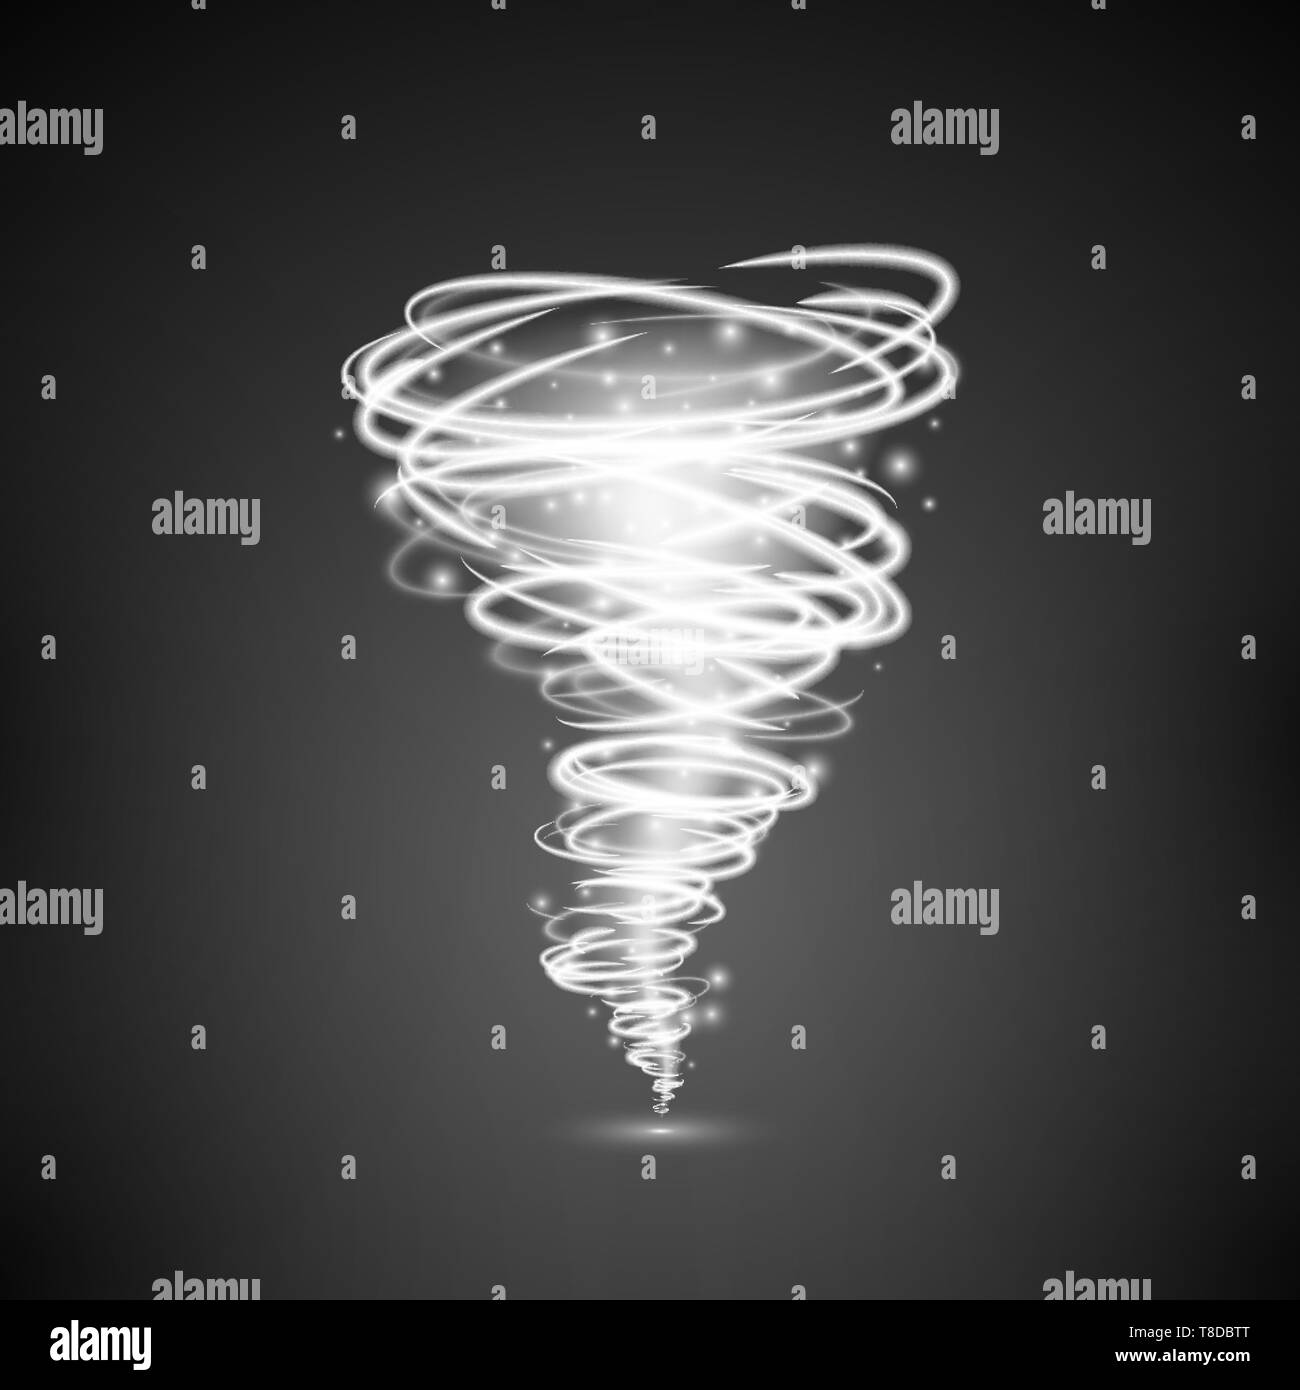 Luce astratta vortex tornado magica illuminazione. Effetto di vortice o ciclone. Illustrazione di vettore isolato su sfondo scuro Illustrazione Vettoriale